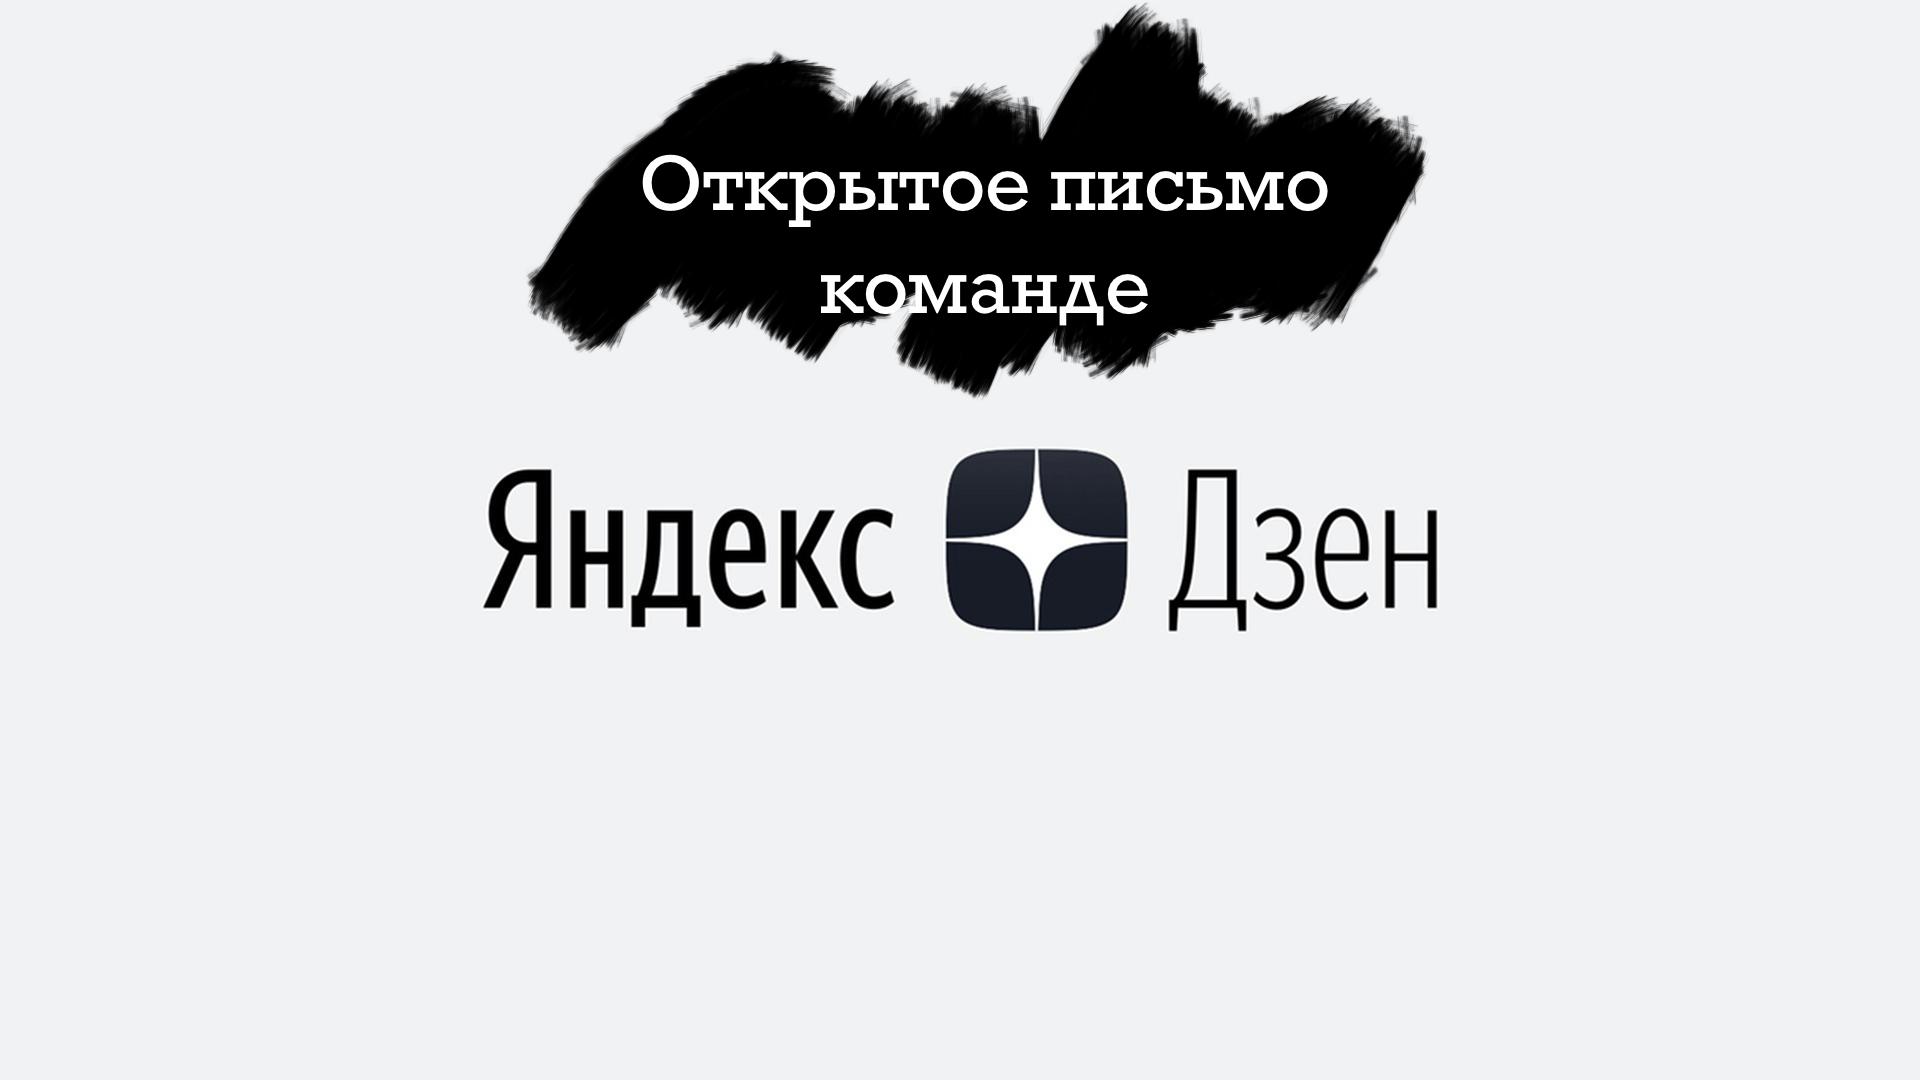 Открытое письмо команде Яндекс.Дзена по поводу ложных обвинений в заимствованного контента